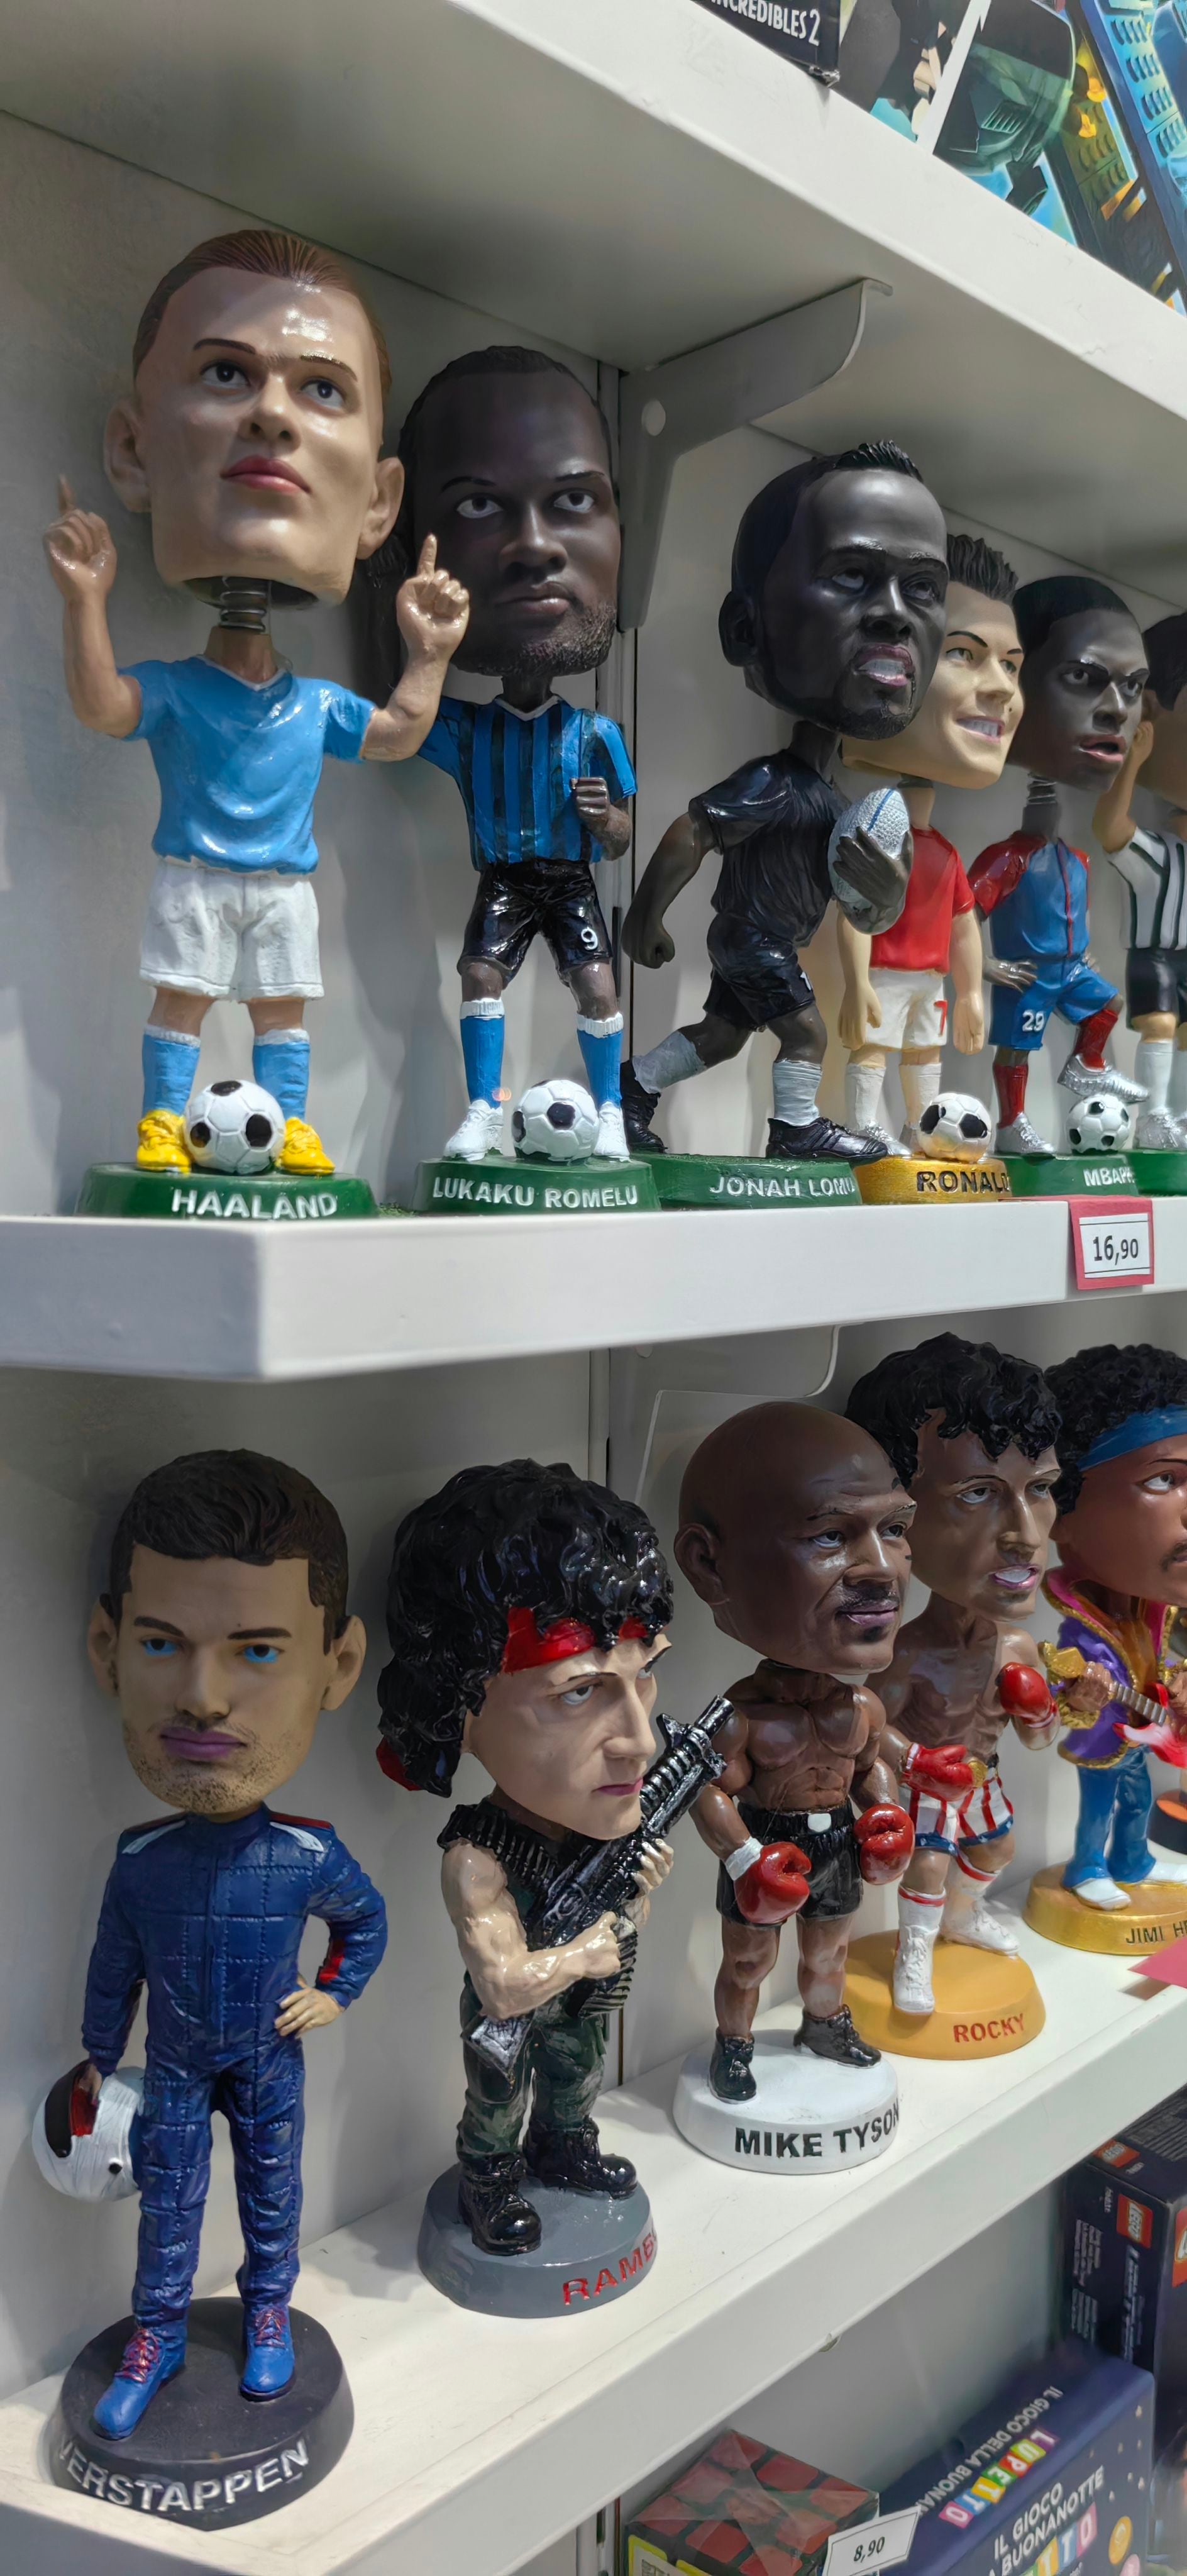 El fútbol y la cultura pop se disputan la atención en el escaparate de una juguetería, en la ciudad de Stresa. 